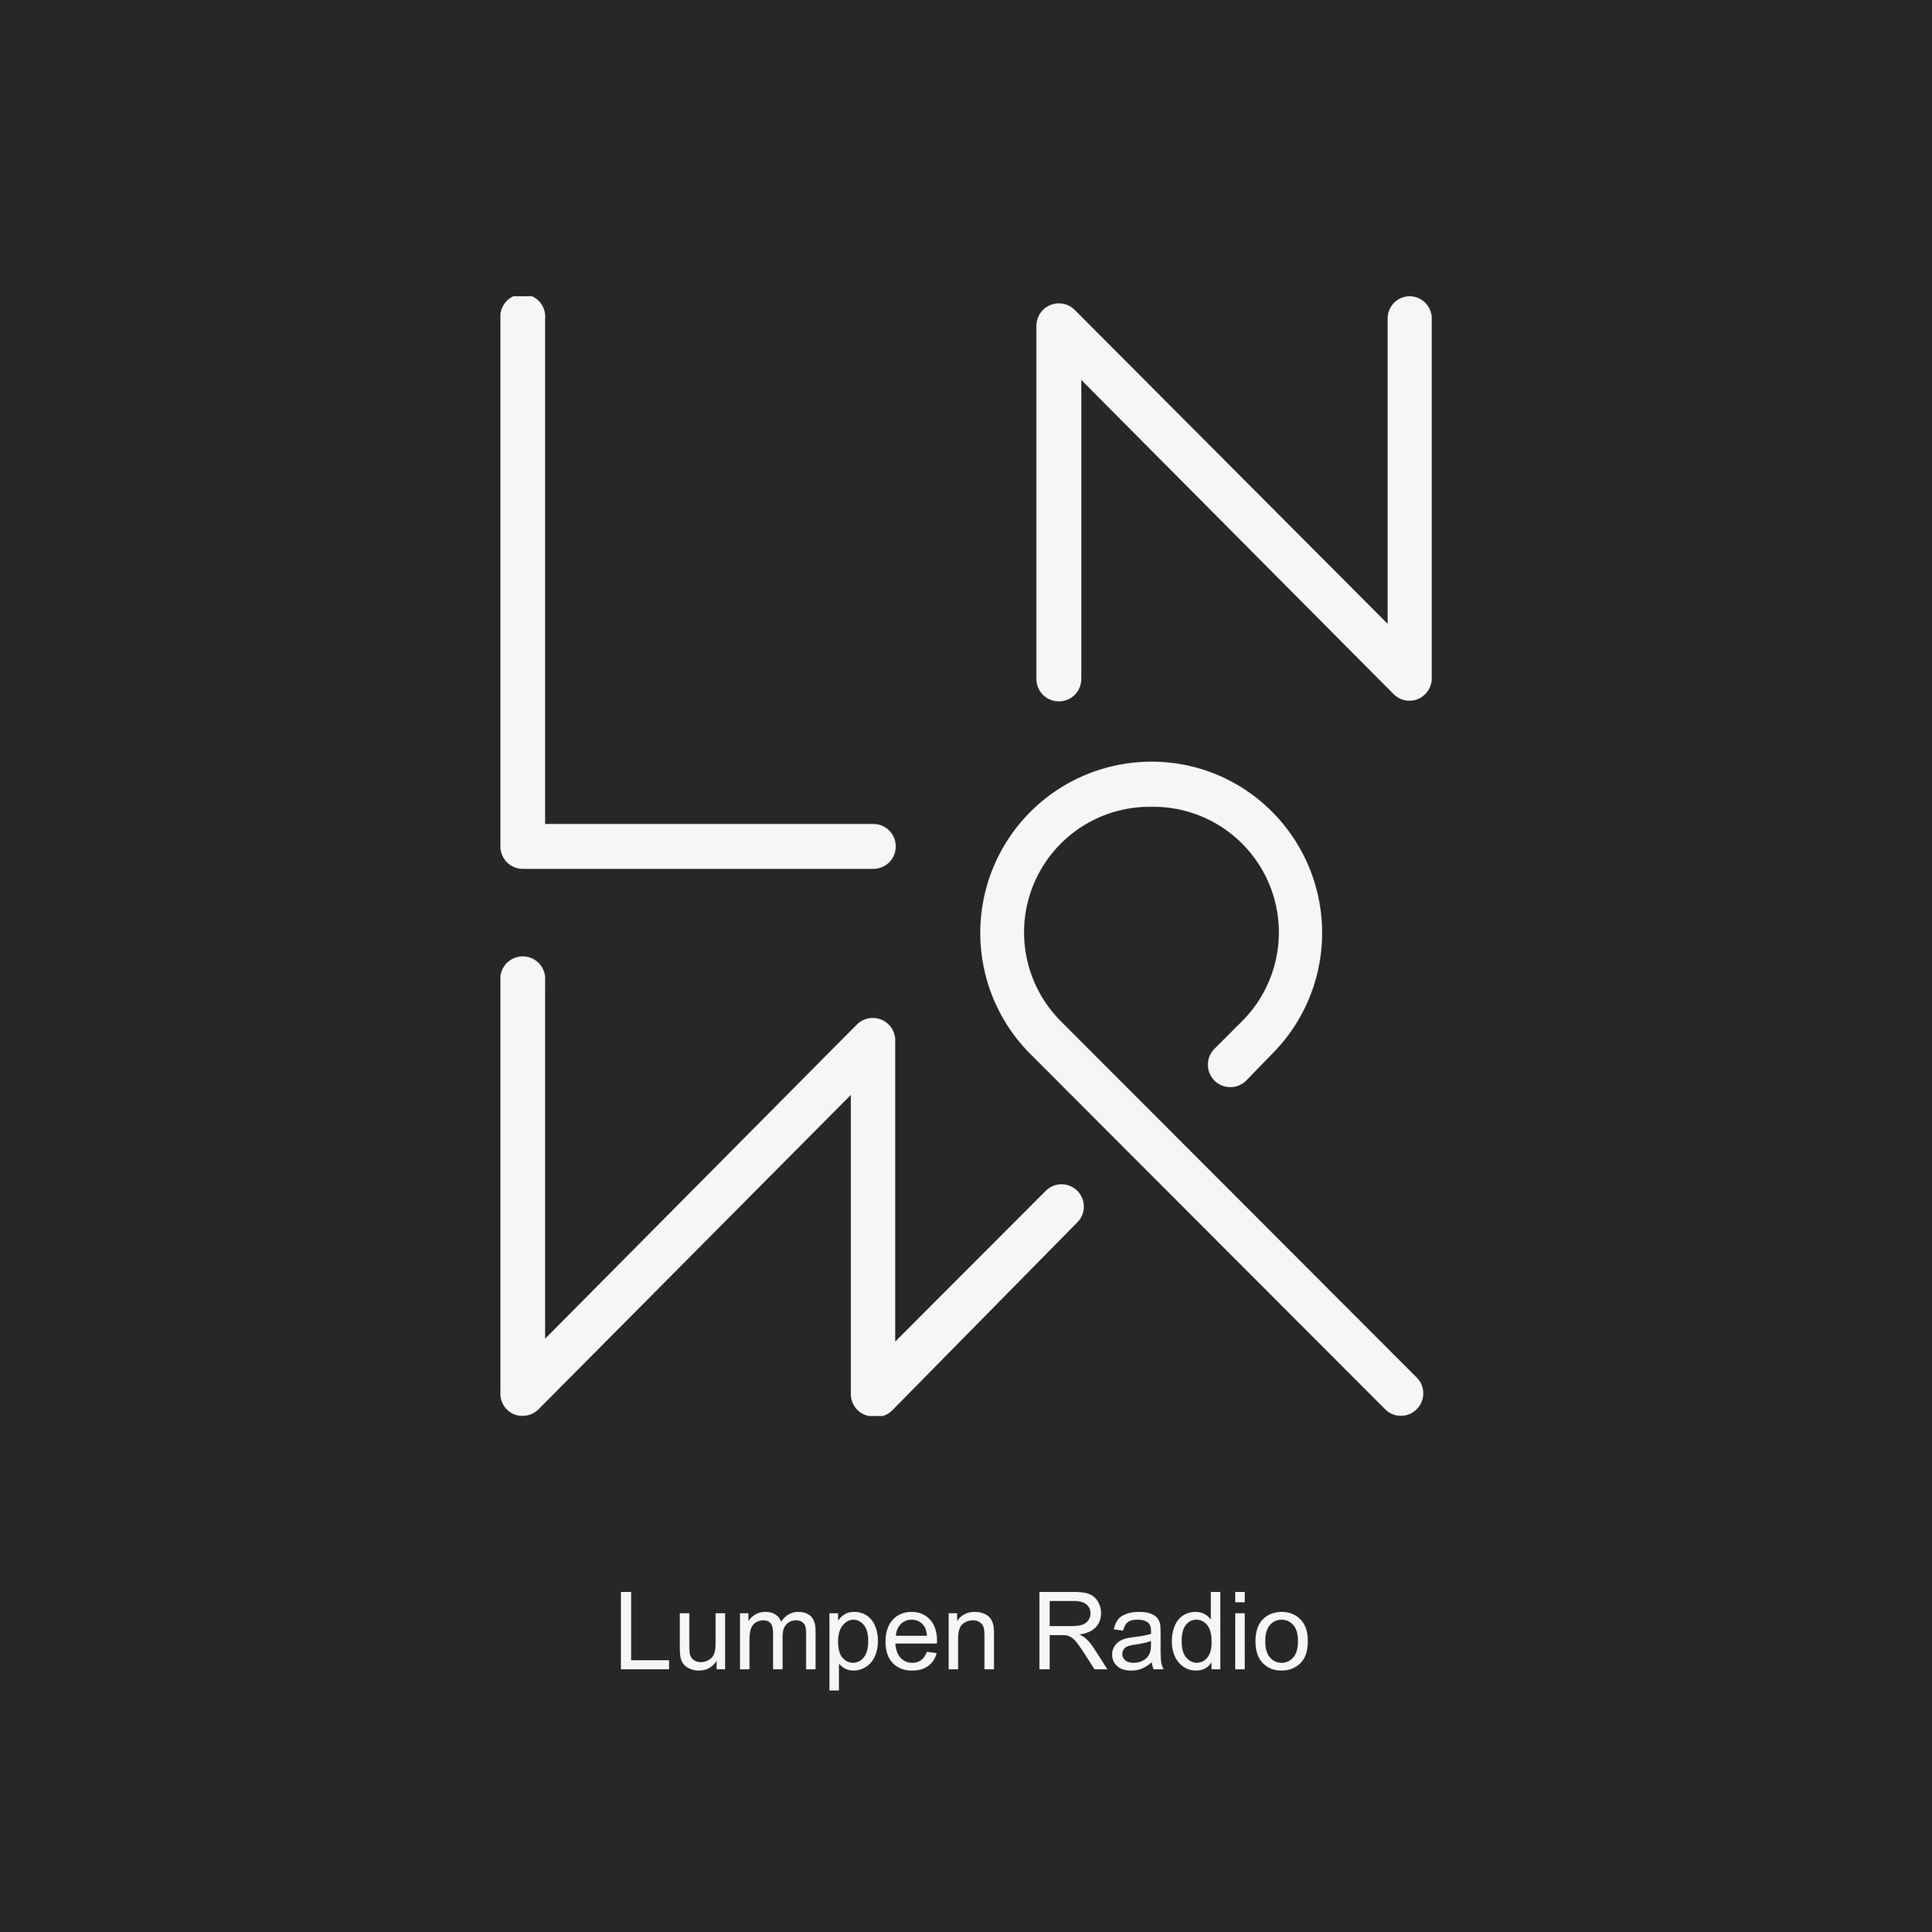 Lumpen Radio